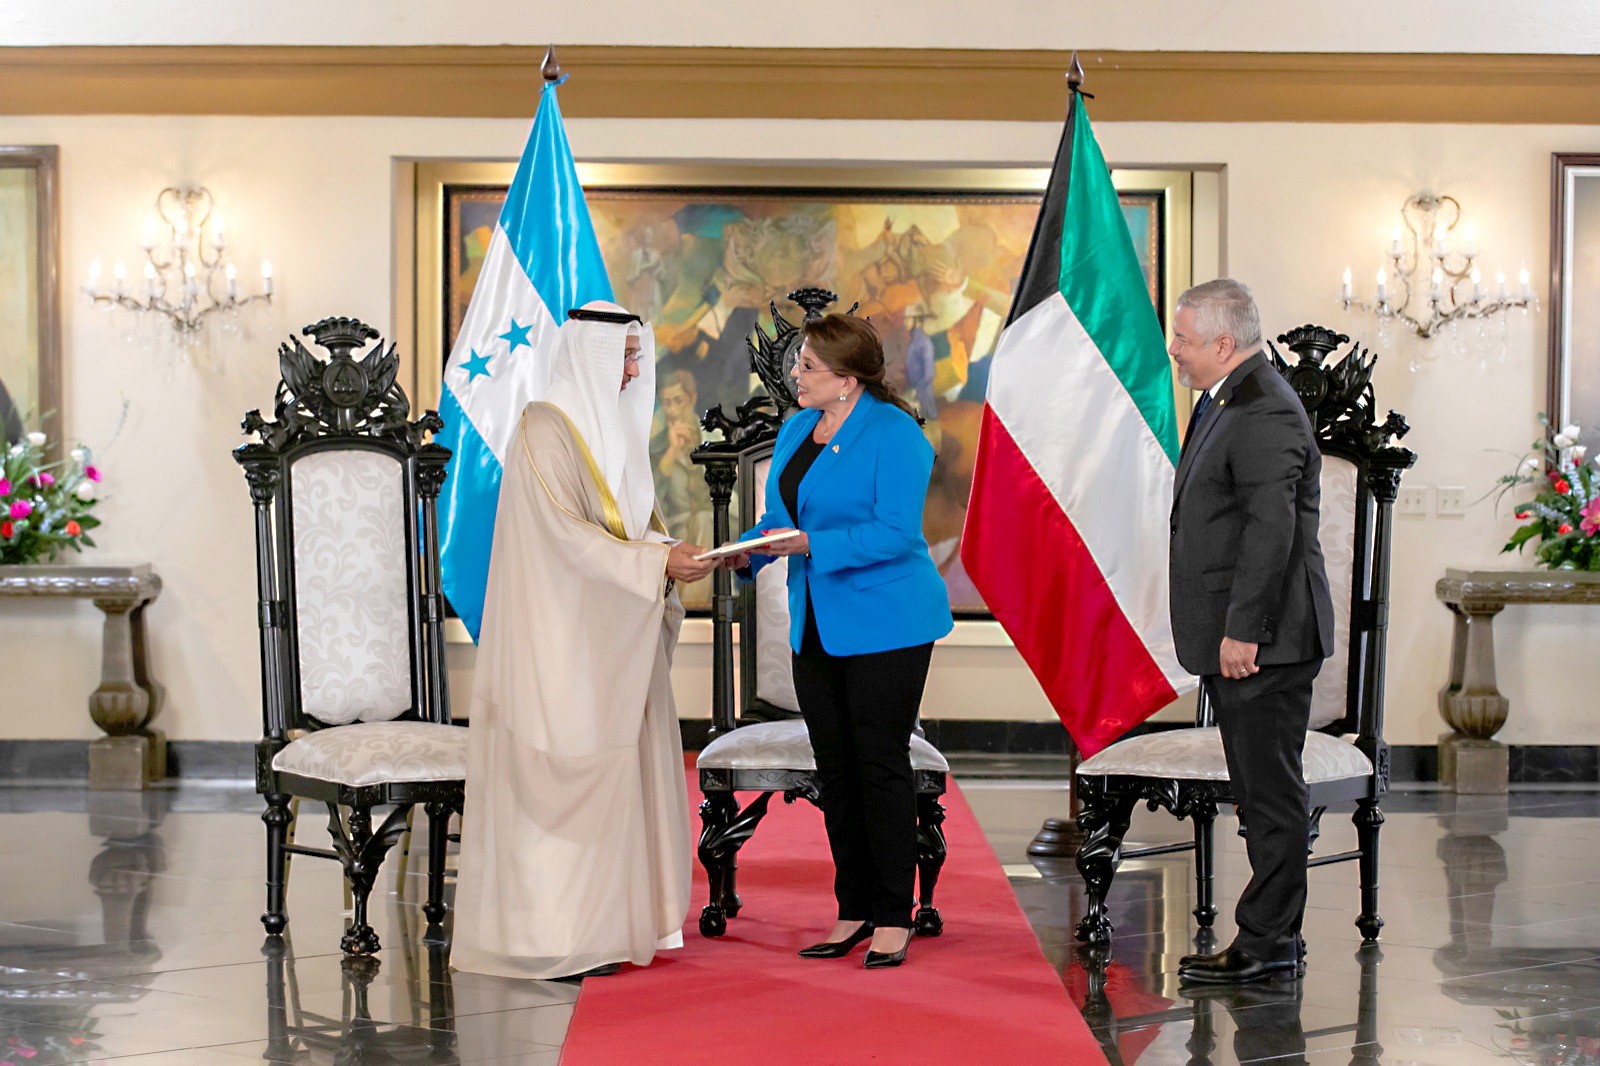 سفير الكويت بالمكسيك يقدم أوراق اعتماده إلى رئيسة هندوراس سفيرا غير مقيم لدى هندوراس
